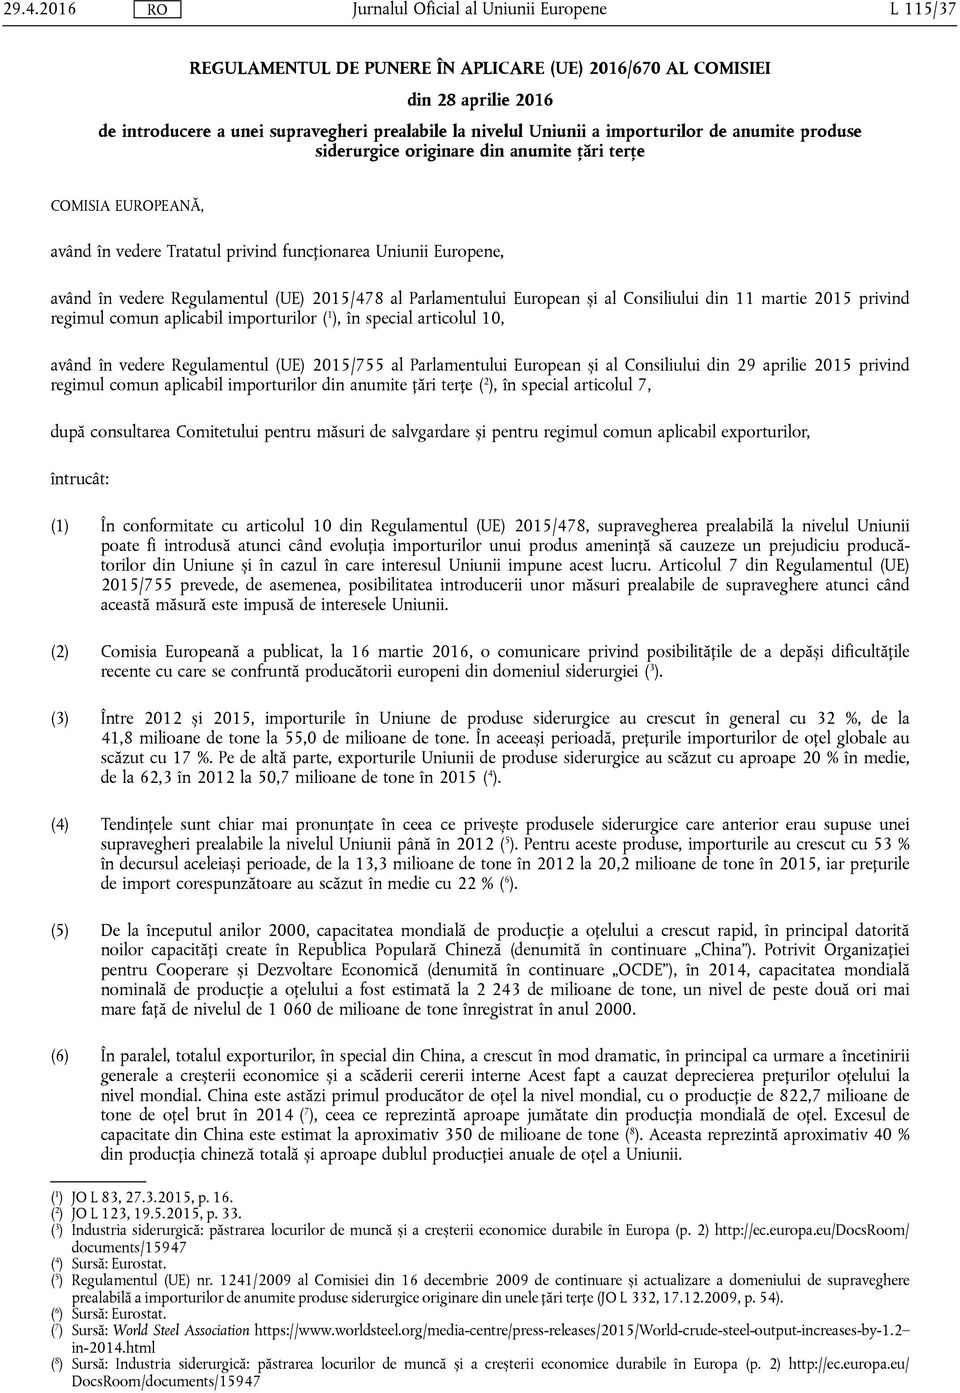 al Consiliului din 11 martie 2015 privind regimul comun aplicabil importurilor ( 1 ), în special articolul 10, având în vedere Regulamentul (UE) 2015/755 al Parlamentului European și al Consiliului